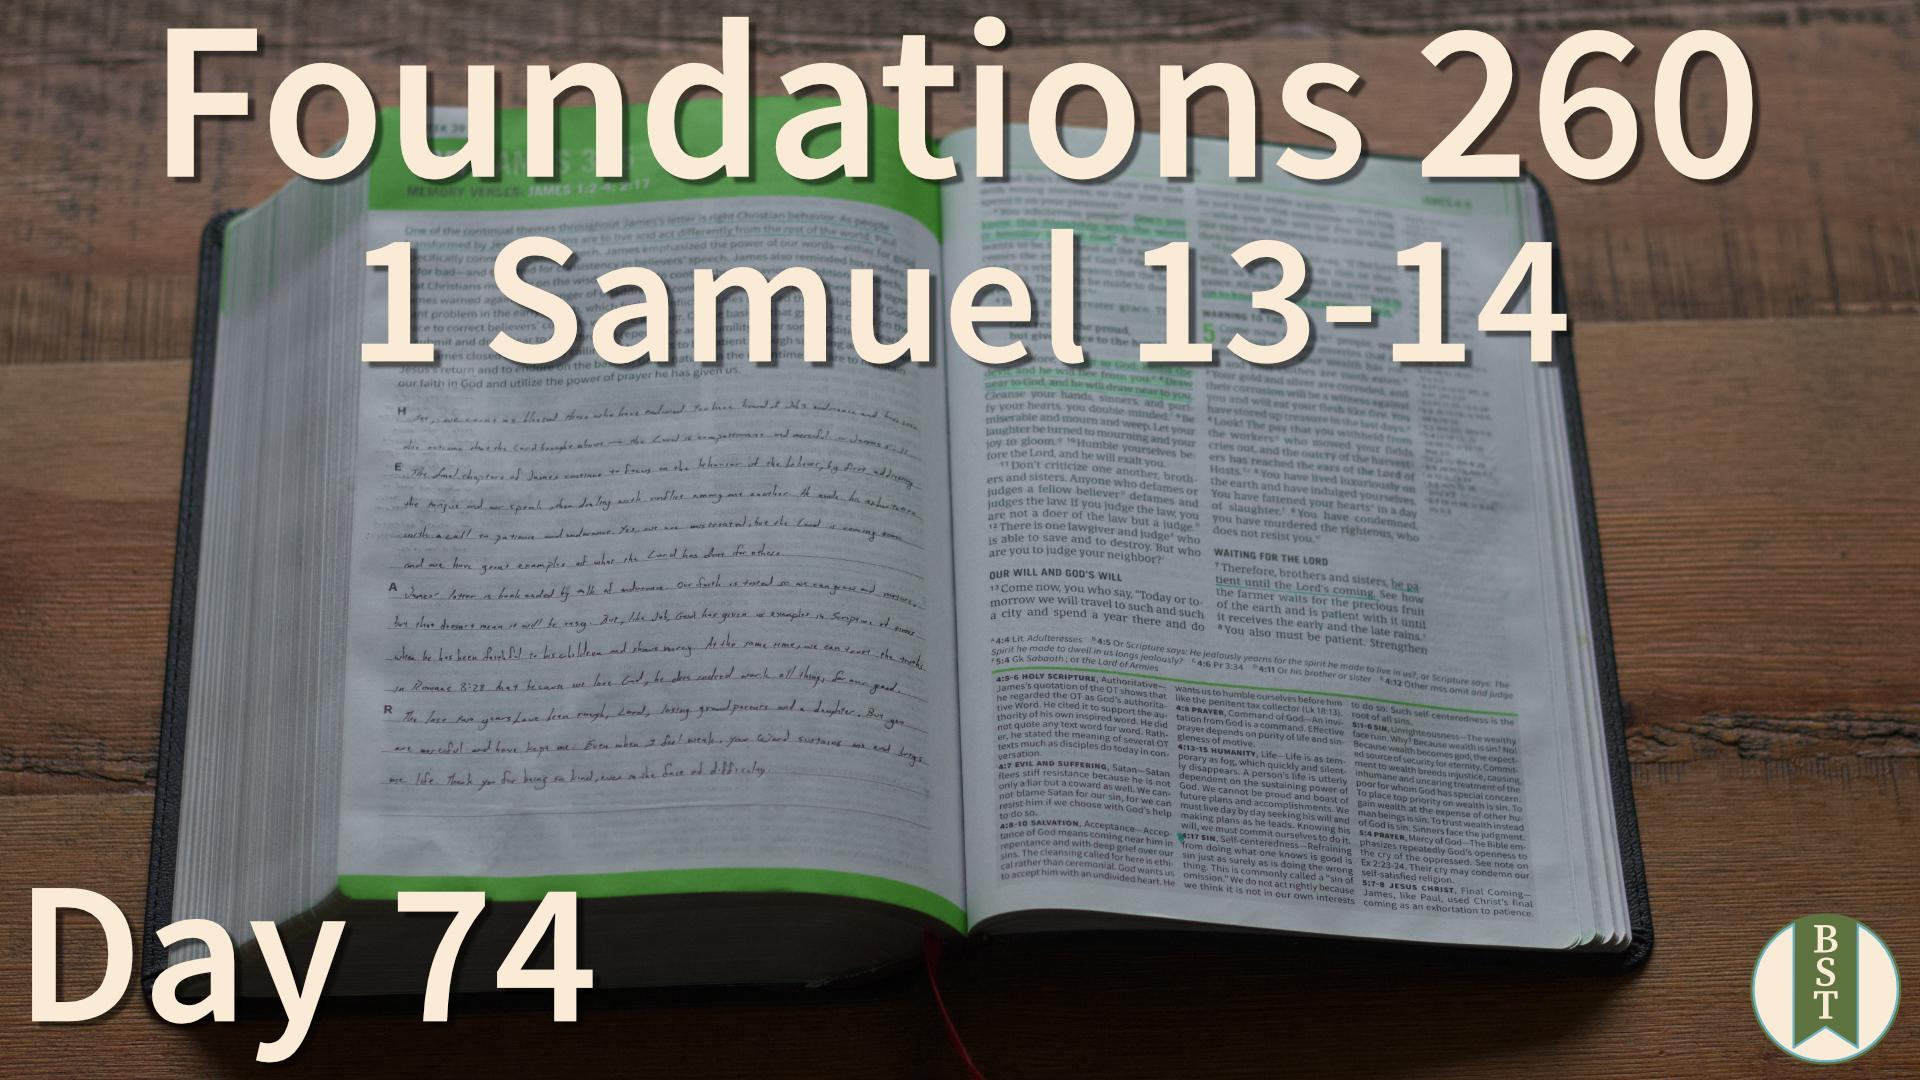 F260 Day 74: 1 Samuel 13-14